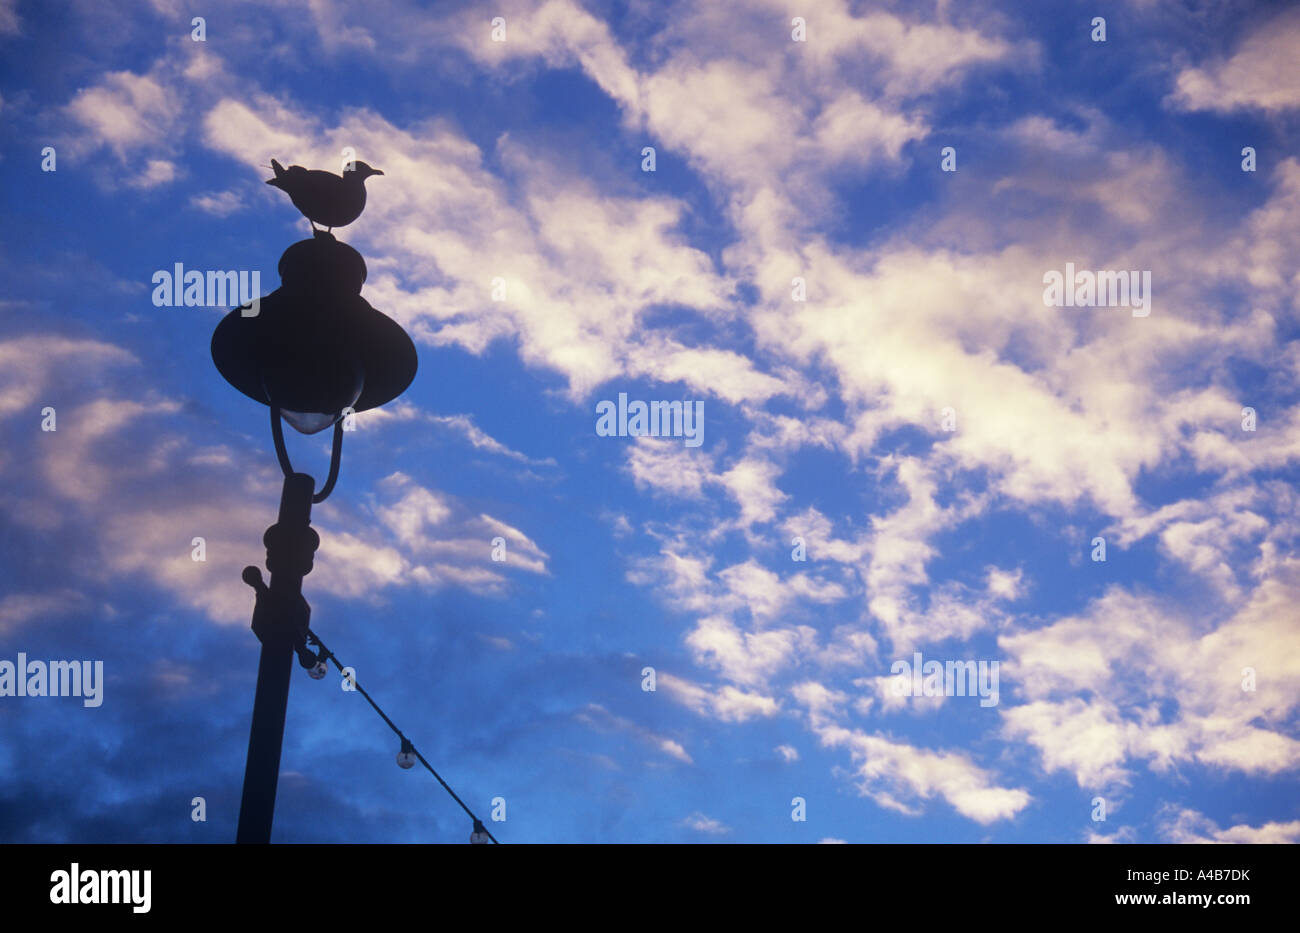 Silbermöwe stehend auf Lamp post mit String von Glühbirnen Silhouette gegen blauen Himmel mit goldenen Stratocumulus Wolken Stockfoto